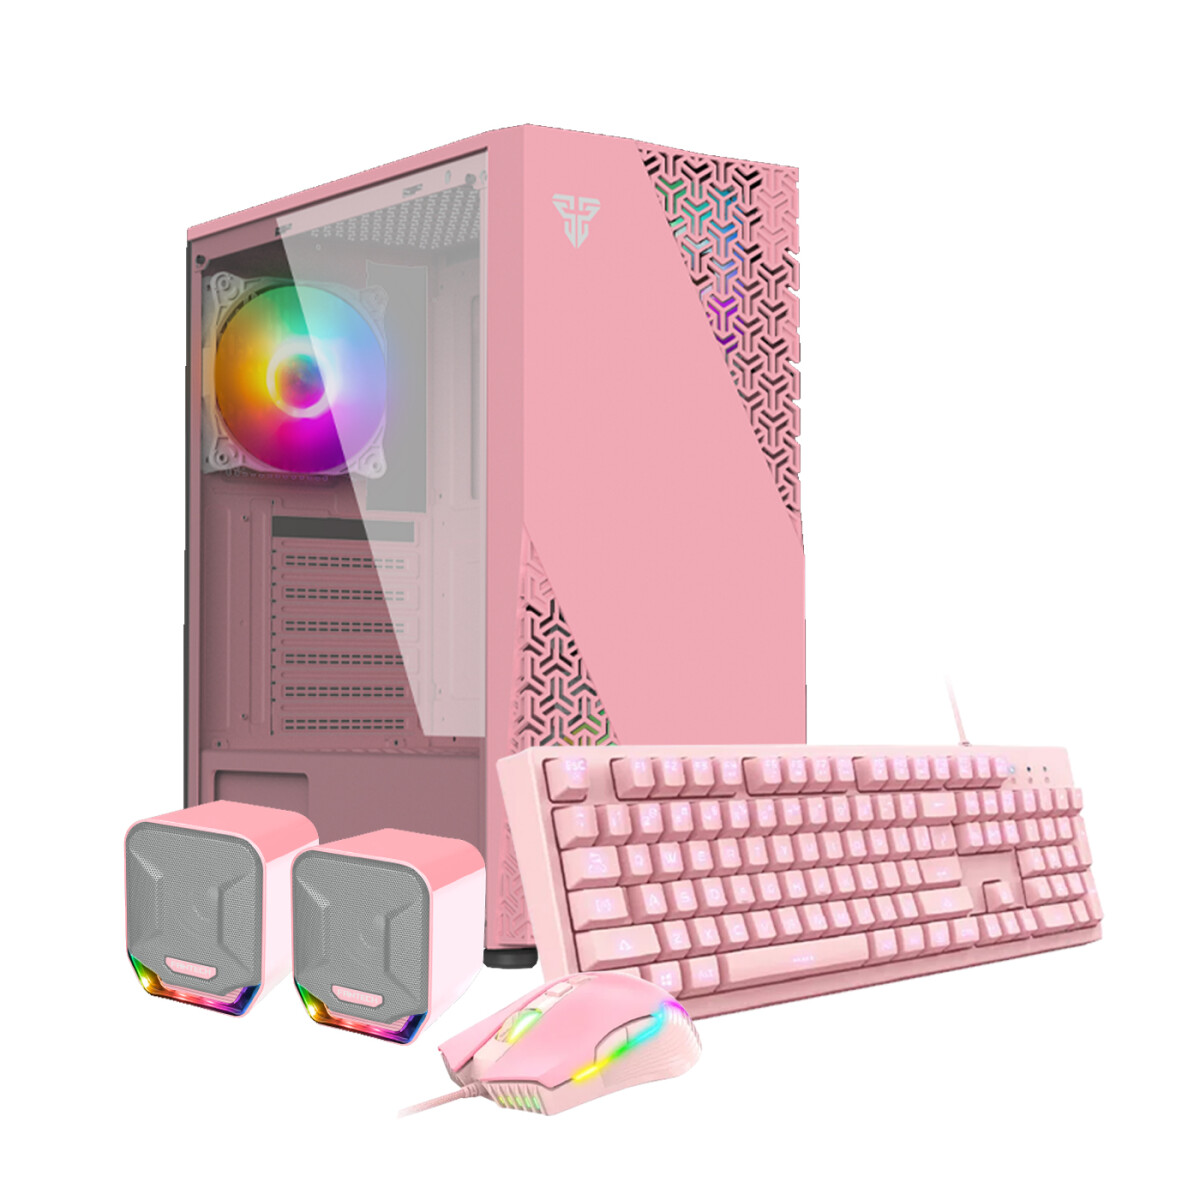 PC GAMER Pink Extra Full. Intel i5-12ªGEN. RAM 32GB DDR4. Disco Sólido 256GB+D.Duro 500GB. Tarjeta Geforce 3050 8GB DDR6 